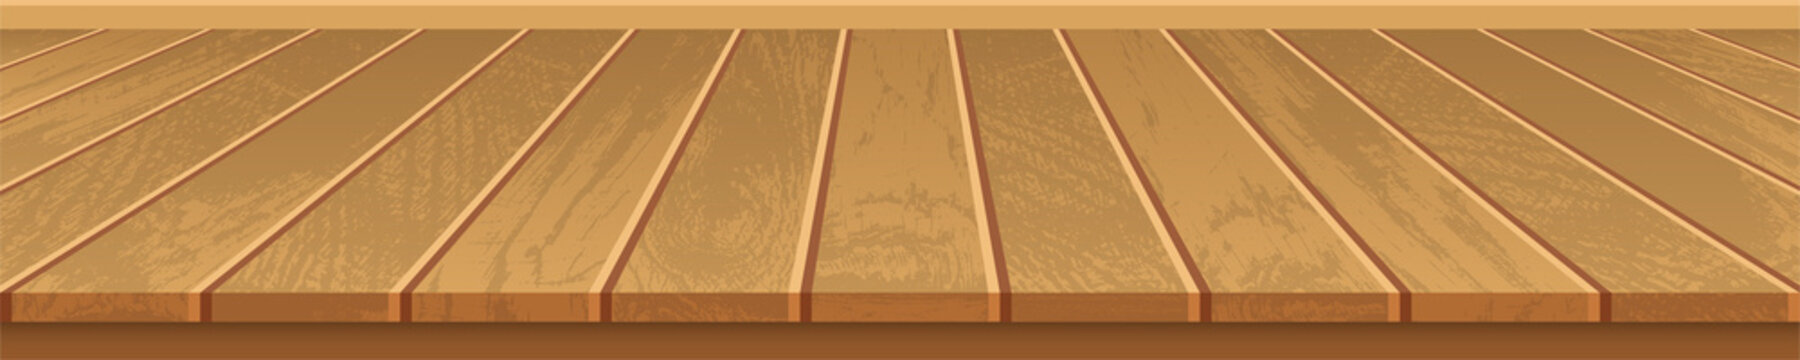 Realistic wooden floor clip art